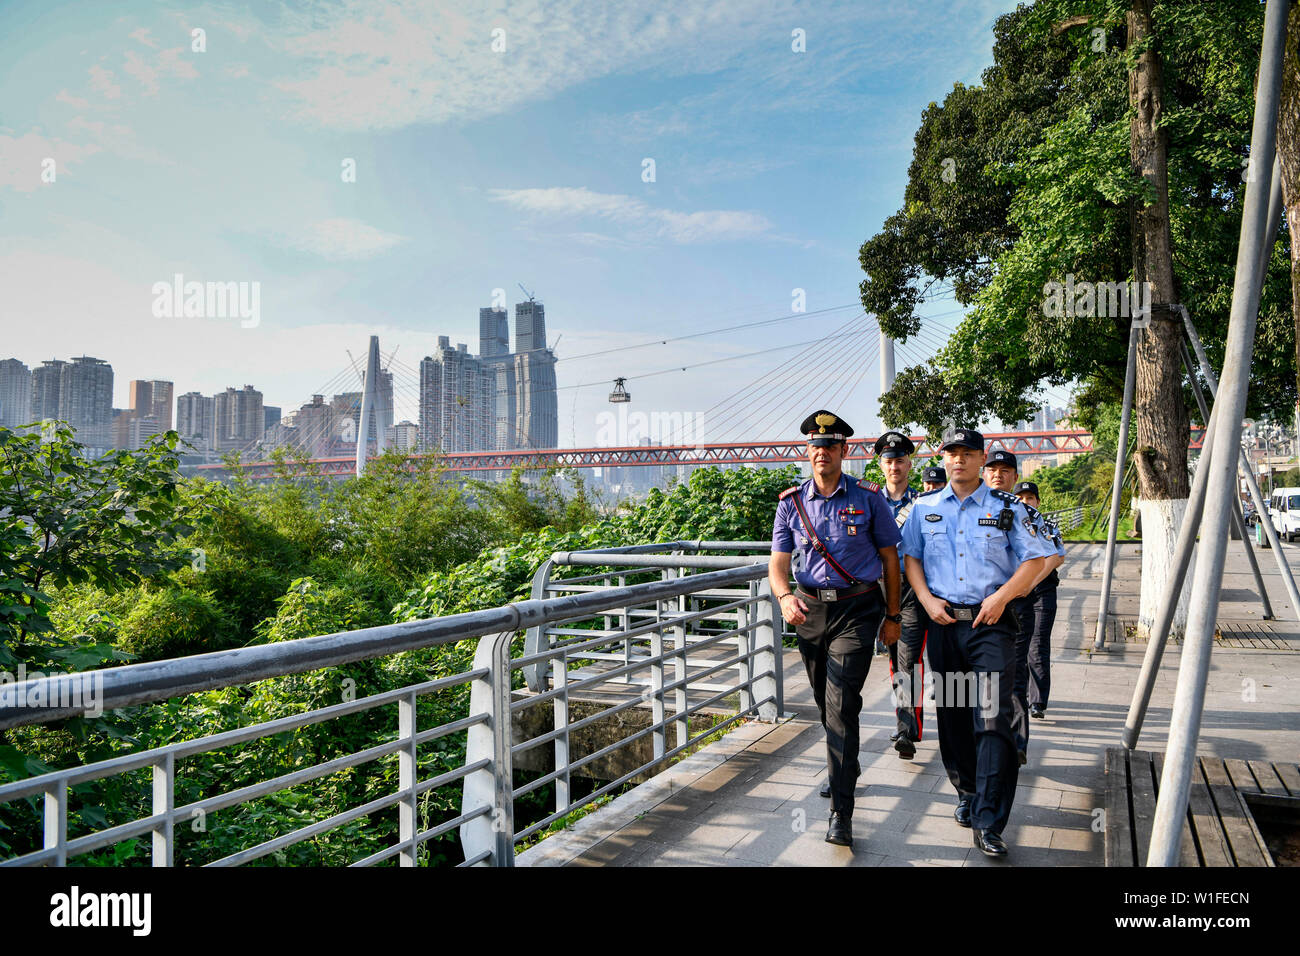 (190702) -- CHONGQING, 2 luglio 2019 (Xinhua) -- Cinese e Italiano degli ufficiali di polizia pattuglia in Nan"di un distretto del sud-ovest della Cina della Municipalità di Chongqing, 2 luglio 2019. La polizia di Chongqing ha lanciato un pattugliamento comune con le loro controparti italiane il 26 giugno, secondo la polizia locale. Quattro poliziotti cinesi che erano fluente in inglese e italiano hanno aderito la pattuglia con due italiani ufficiali della polizia. Il pattugliamento di famose mete turistiche in comune, la polizia italiana funzionari potranno aiutare a trattare le questioni legate ai turisti italiani durante i dieci giorni di pattugliamento comune. L'Italiano pol Foto Stock